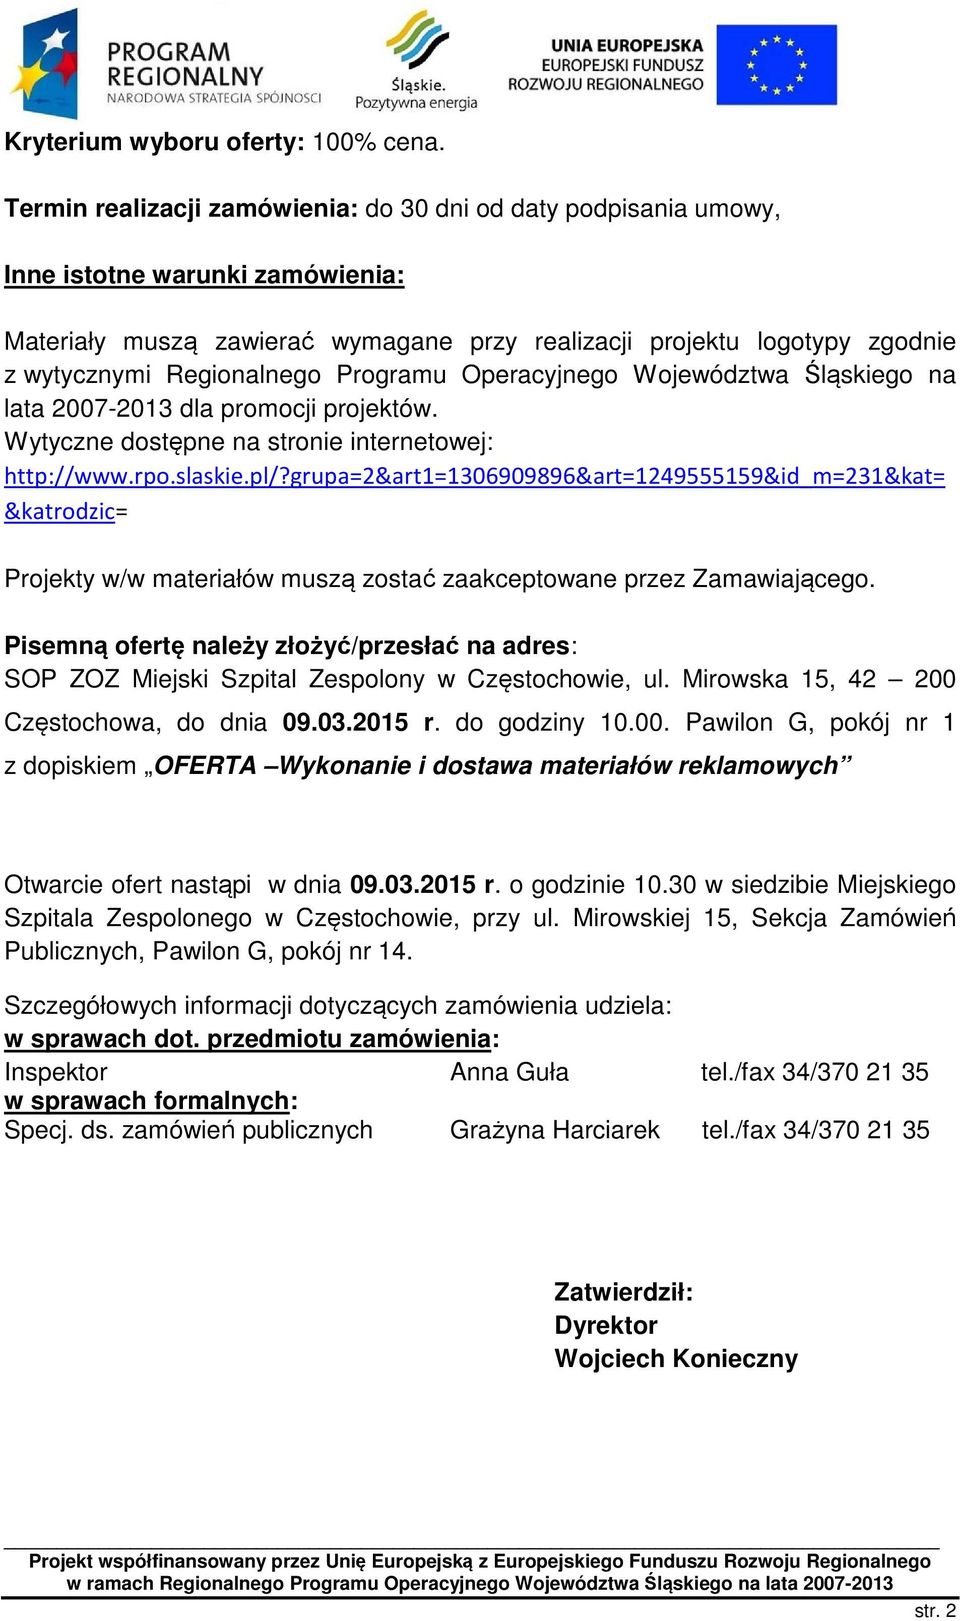 Regionalnego Programu Operacyjnego Województwa Śląskiego na lata 2007-2013 dla promocji projektów. Wytyczne dostępne na stronie internetowej: http://www.rpo.slaskie.pl/?